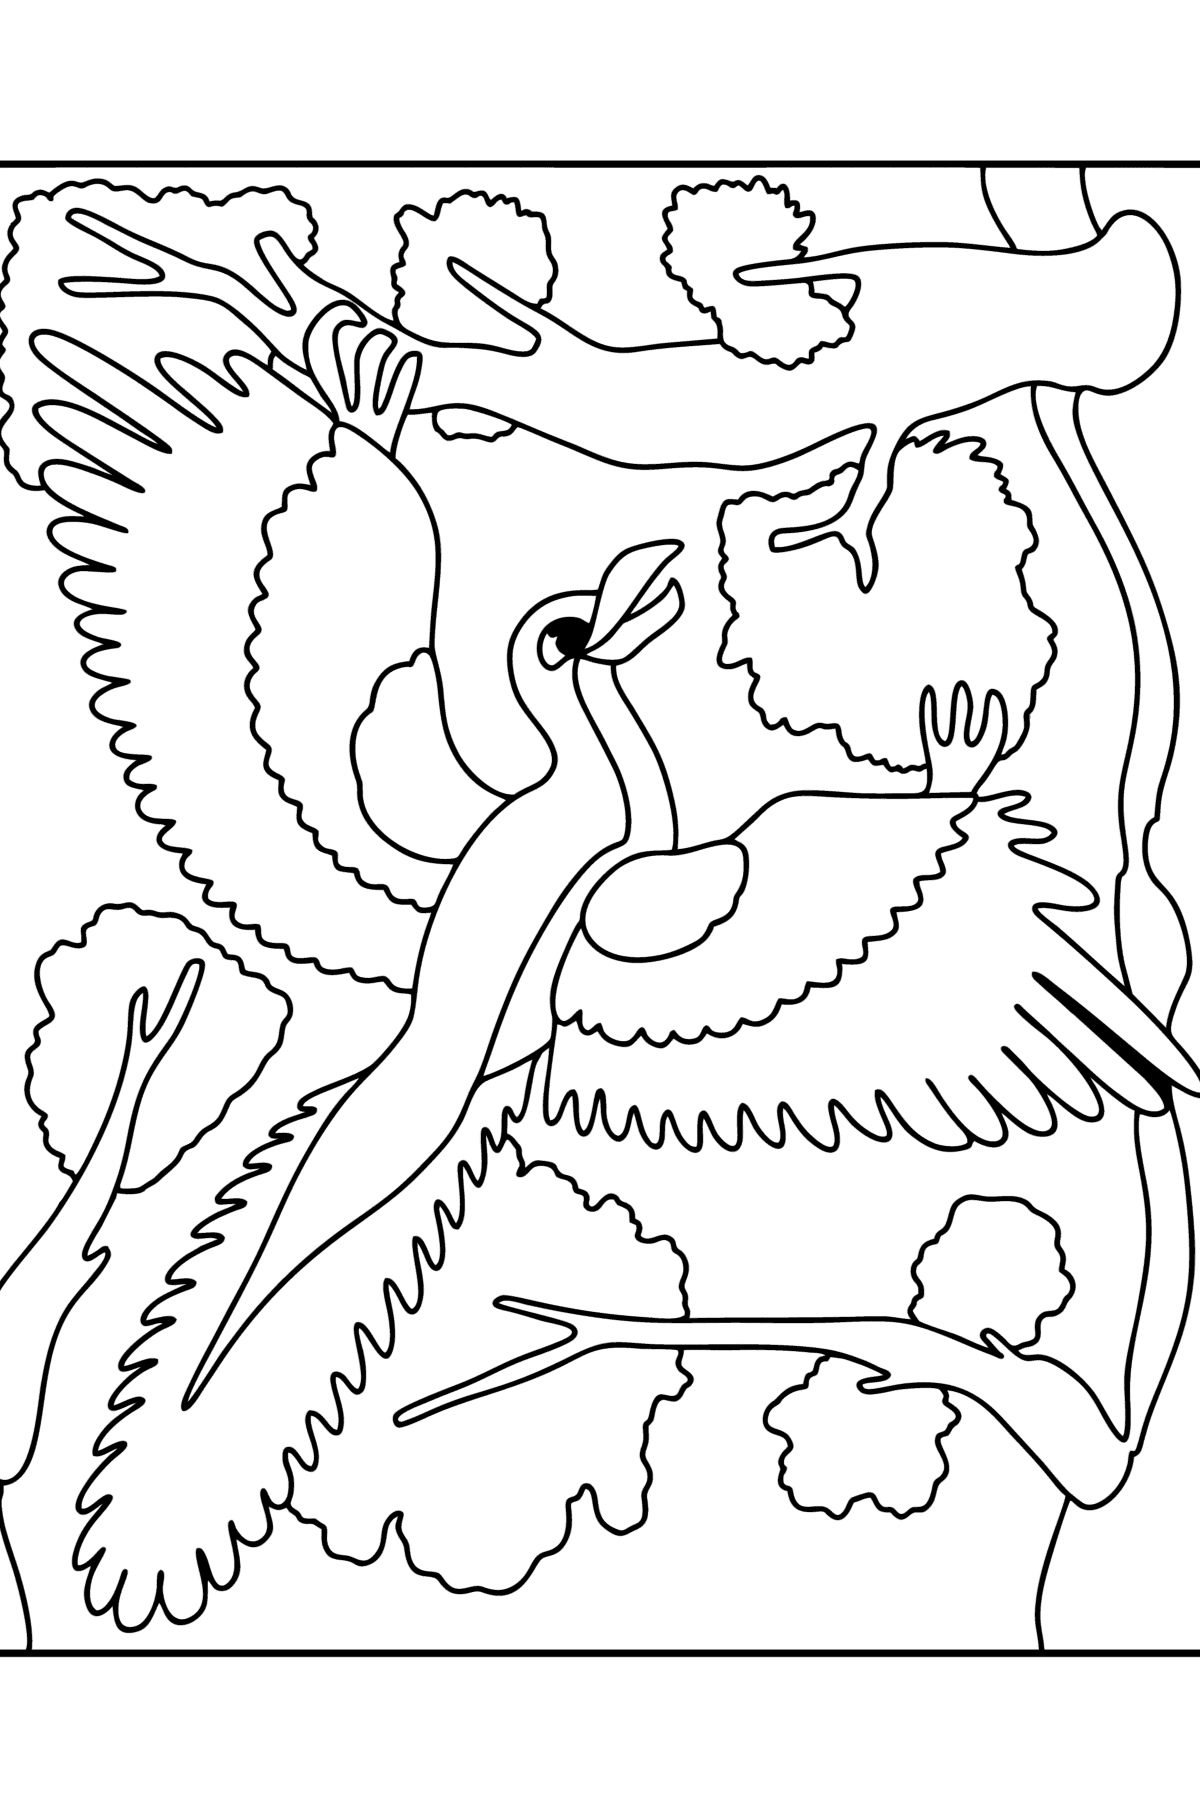 Desenho de Archaeopteryx para colorir - Imagens para Colorir para Crianças